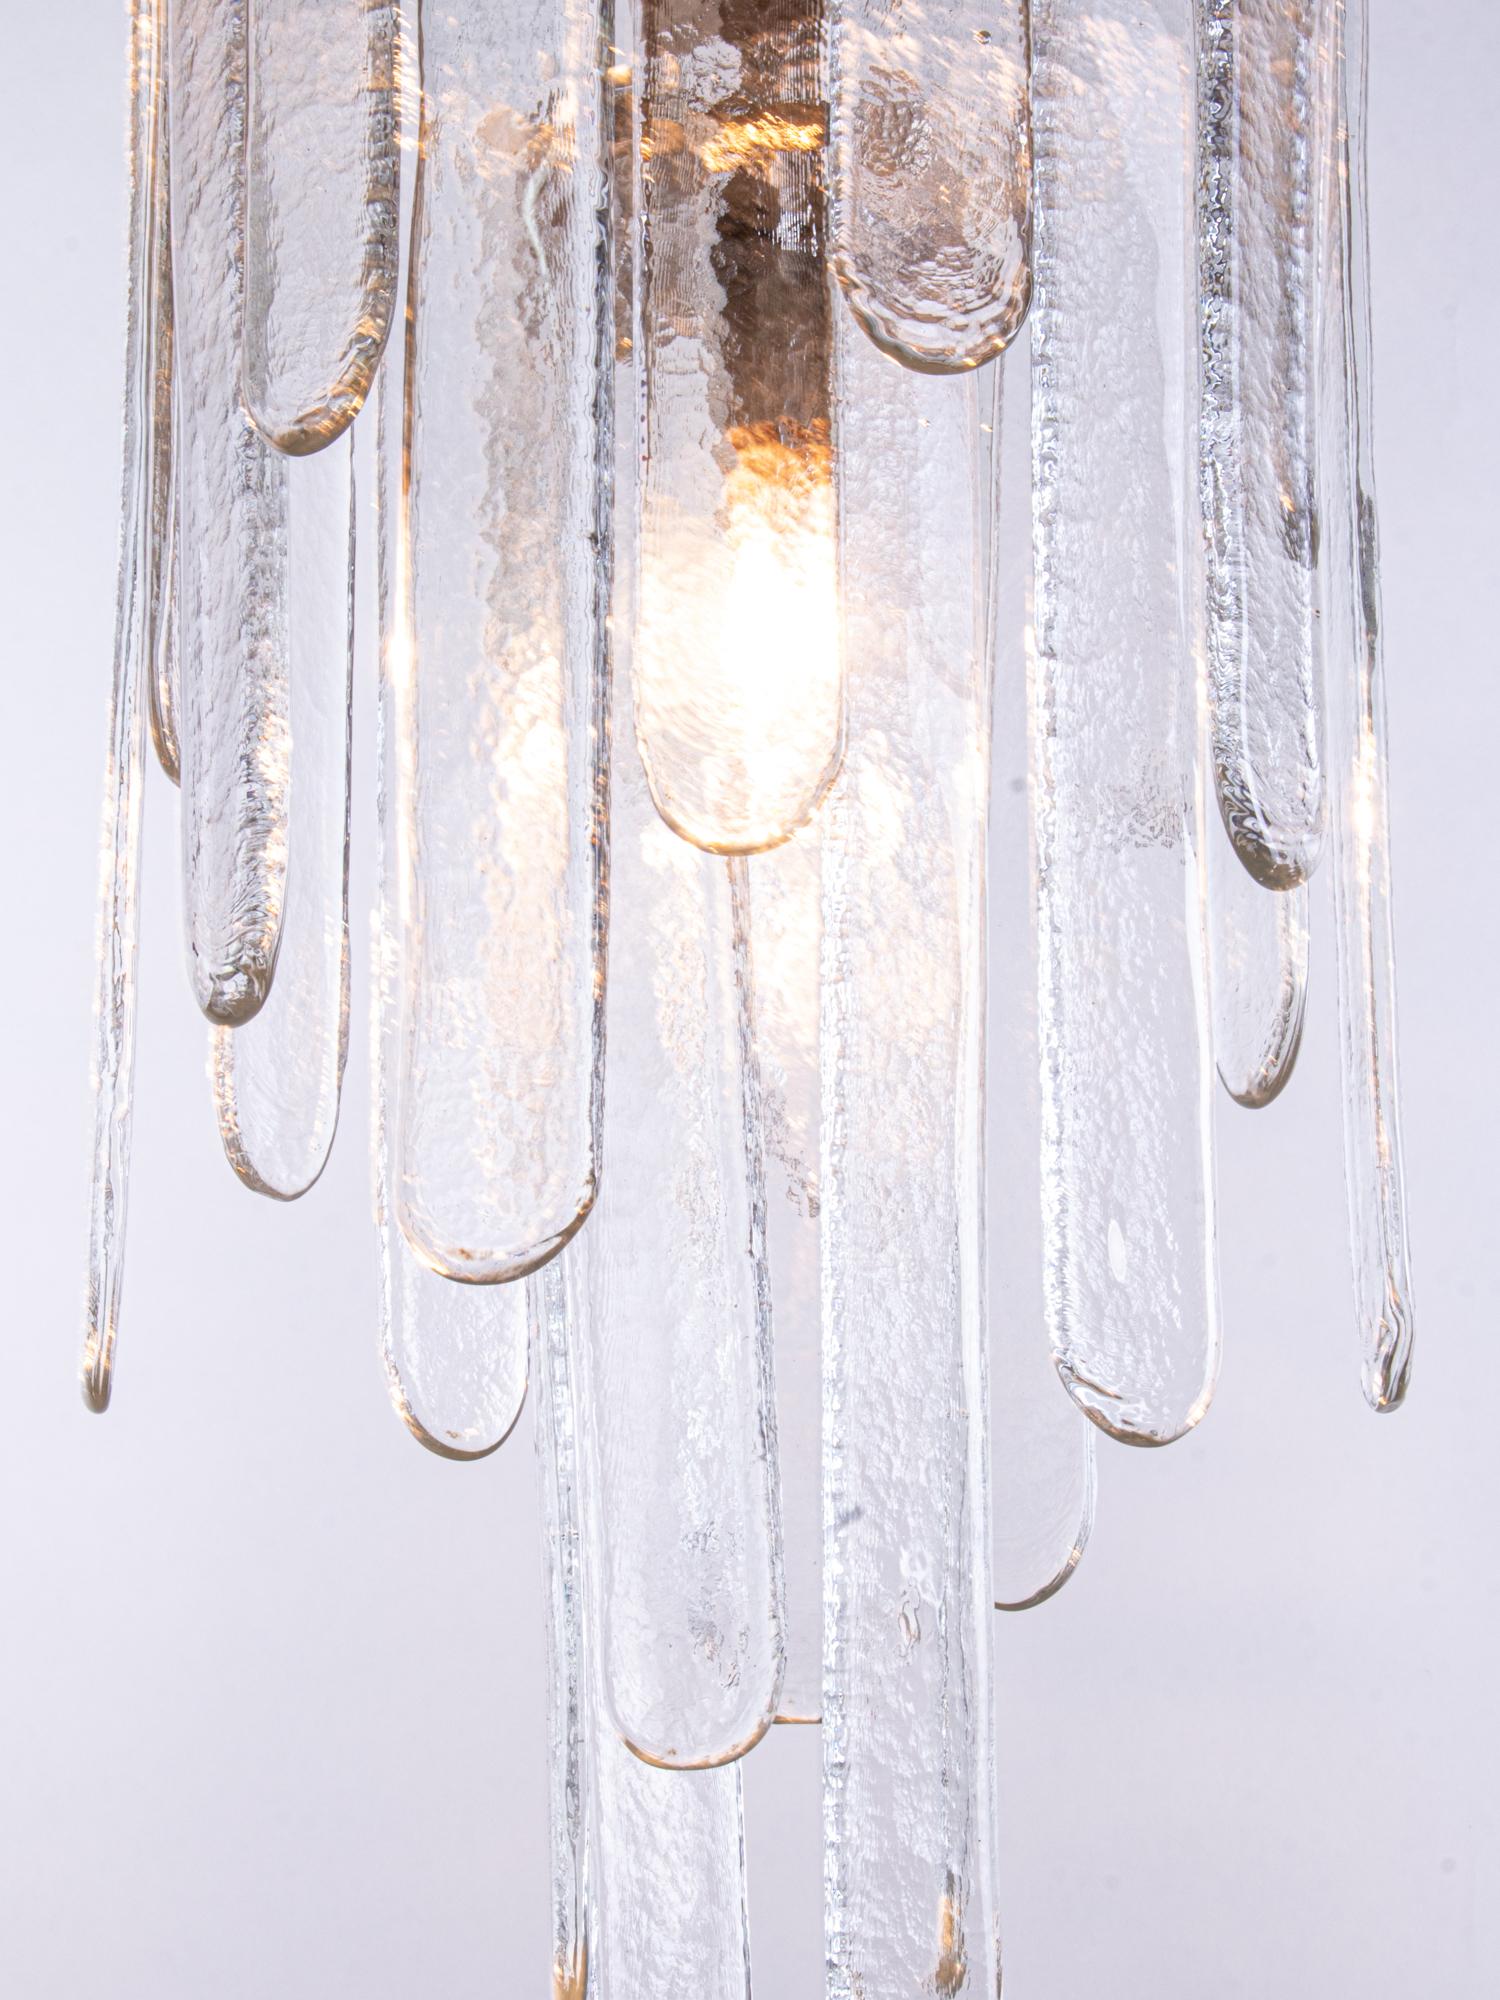 Eleganter, riesiger, kaskadenförmiger Murano-Eisglas-Wasserfall-Kronleuchter. Der Kronleuchter leuchtet wunderschön und spendet sehr viel Licht. Schmuckstück aus der Zeit. Mit dieser Leuchte setzen Sie ein klares Statement in Ihrer Raumgestaltung.